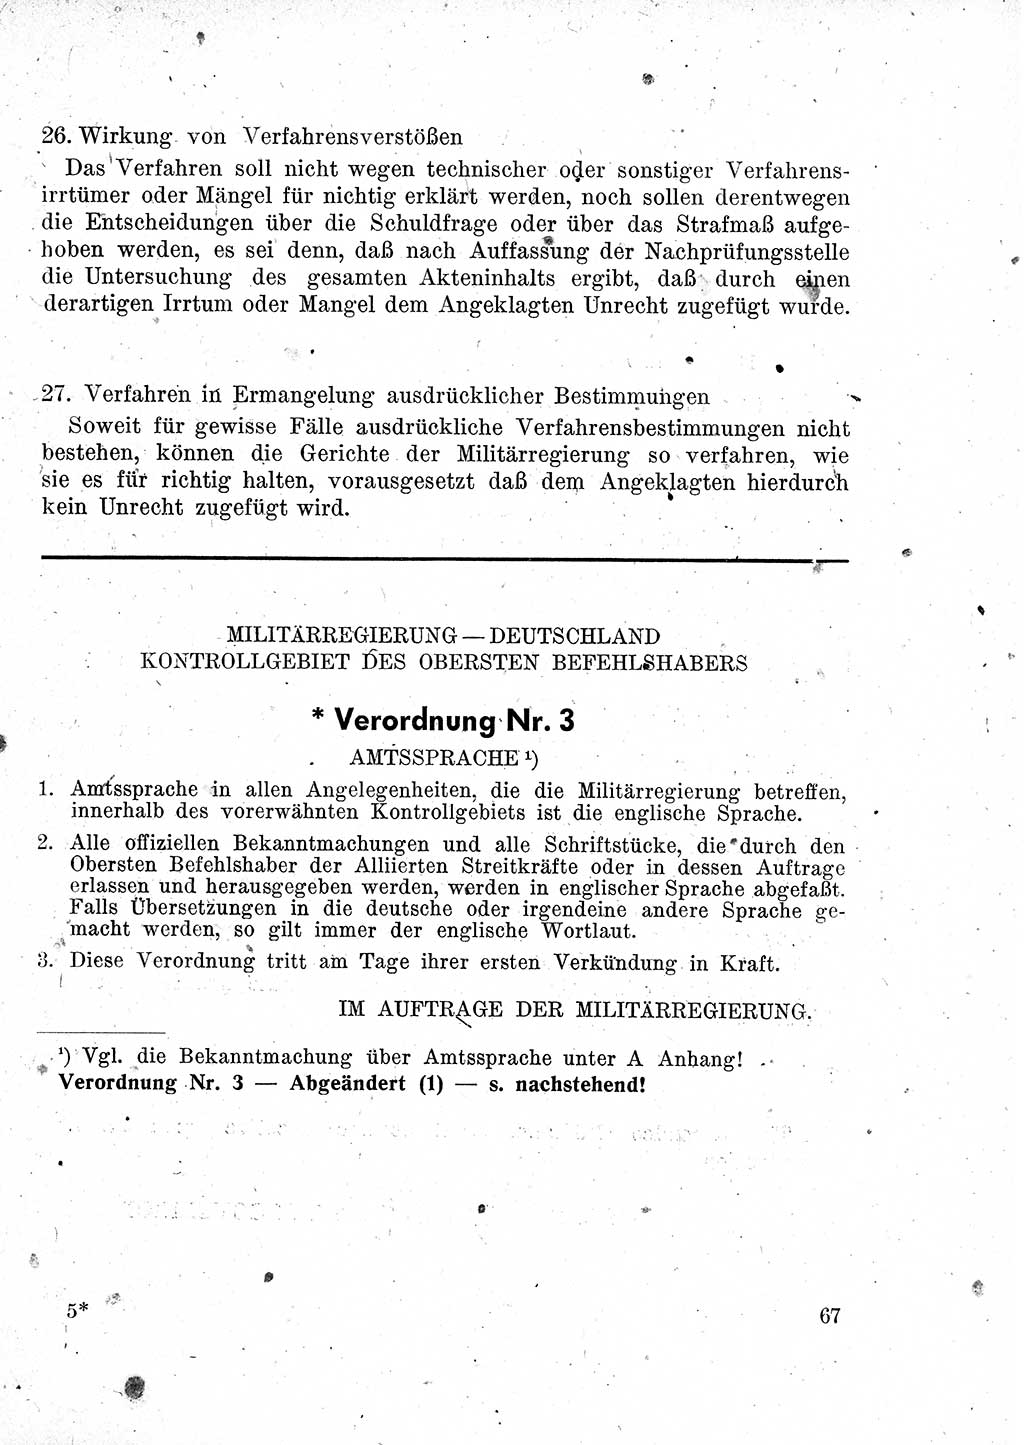 Das Recht der Besatzungsmacht (Deutschland), Proklamationen, Deklerationen, Verordnungen, Gesetze und Bekanntmachungen 1947, Seite 67 (R. Bes. Dtl. 1947, S. 67)